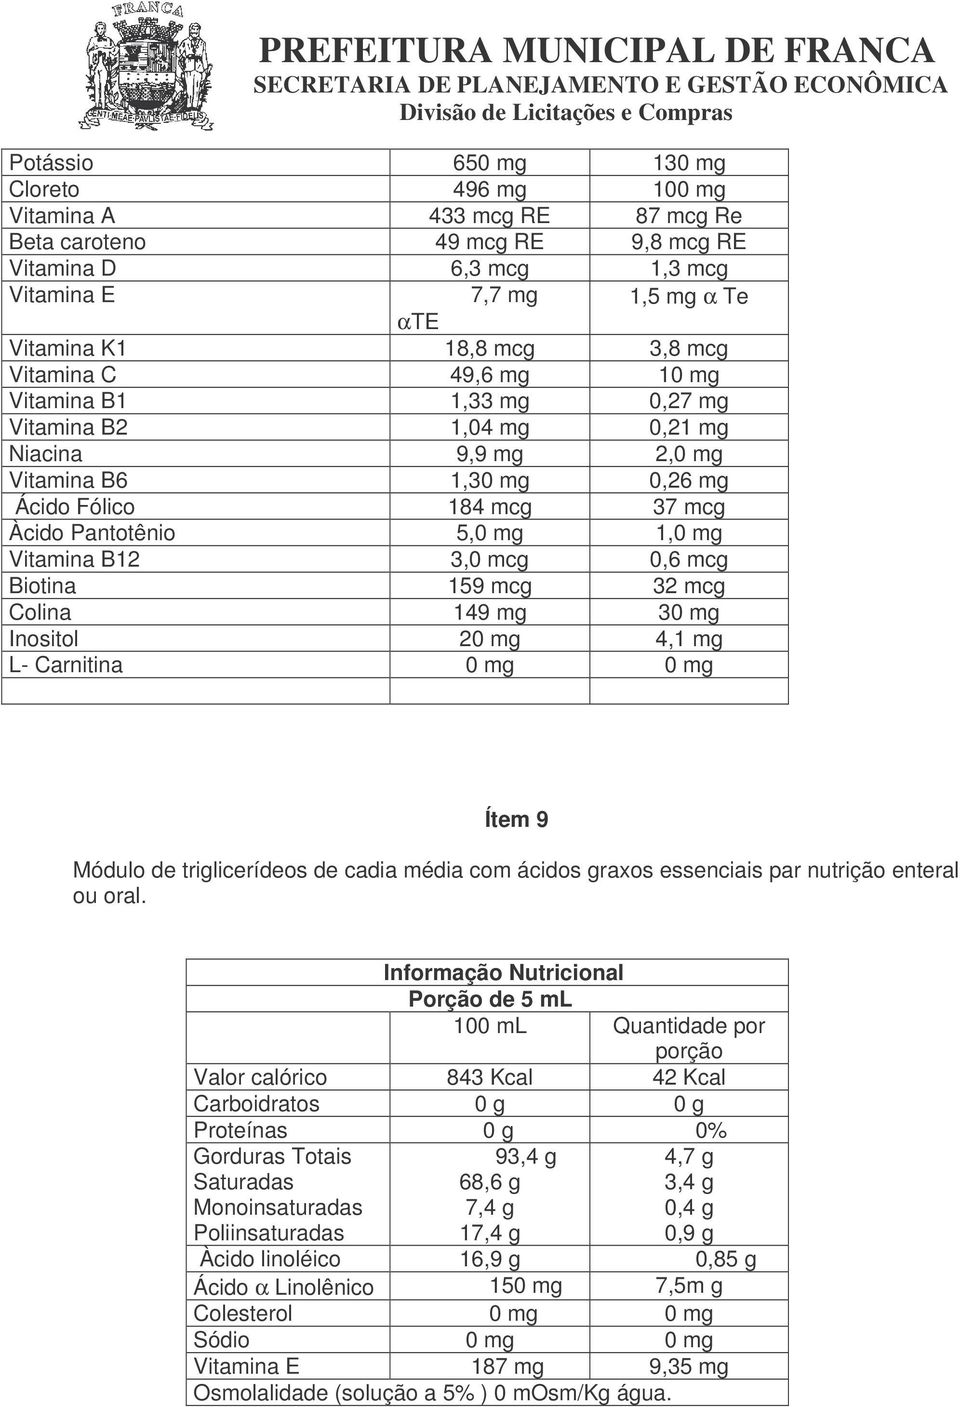 Vitamina B12 3,0 mcg 0,6 mcg Biotina 159 mcg 32 mcg Colina 149 mg 30 mg Inositol 20 mg 4,1 mg L- Carnitina 0 mg 0 mg Ítem 9 Módulo de triglicerídeos de cadia média com ácidos graxos essenciais par